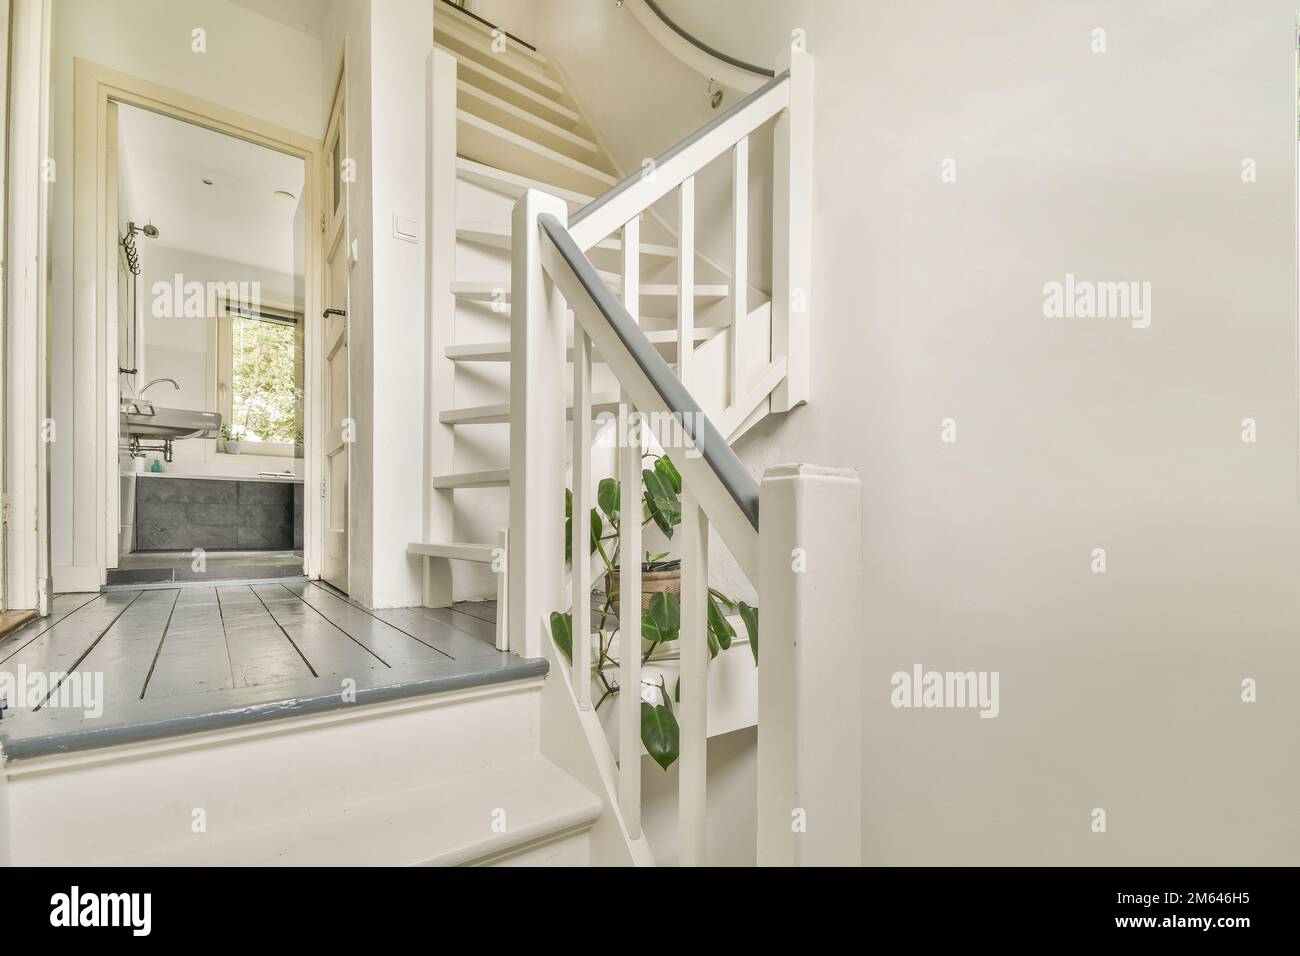 Eine Treppe in einem Haus mit Pflanzen an der Wand und Treppen, die zum Bereich im zweiten Stock führen Stockfoto